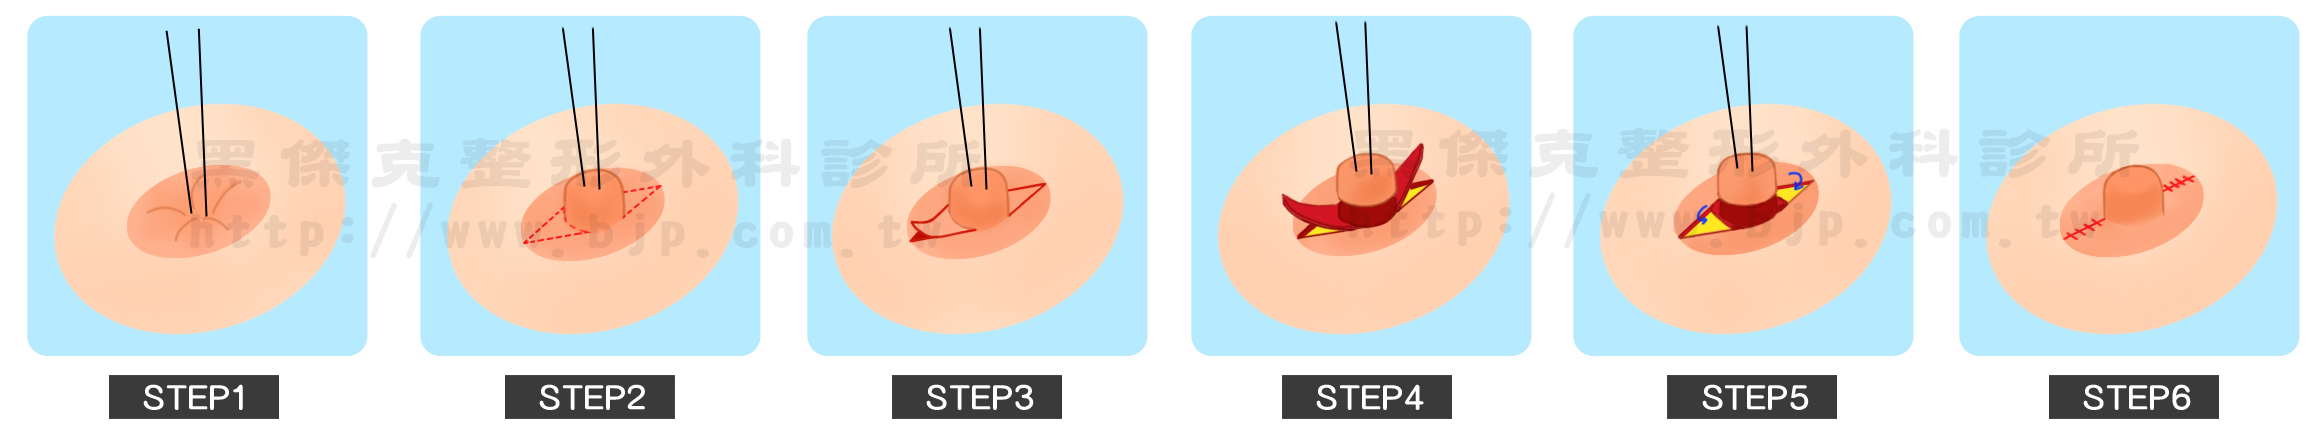 乳頭美型手術，乳頭凹陷：採用皮瓣支撐法來治療，將緊縮的乳頭下組織放鬆，消除乳頭向下牽引力量，再用2~3個乳暈皮瓣來做支撐。